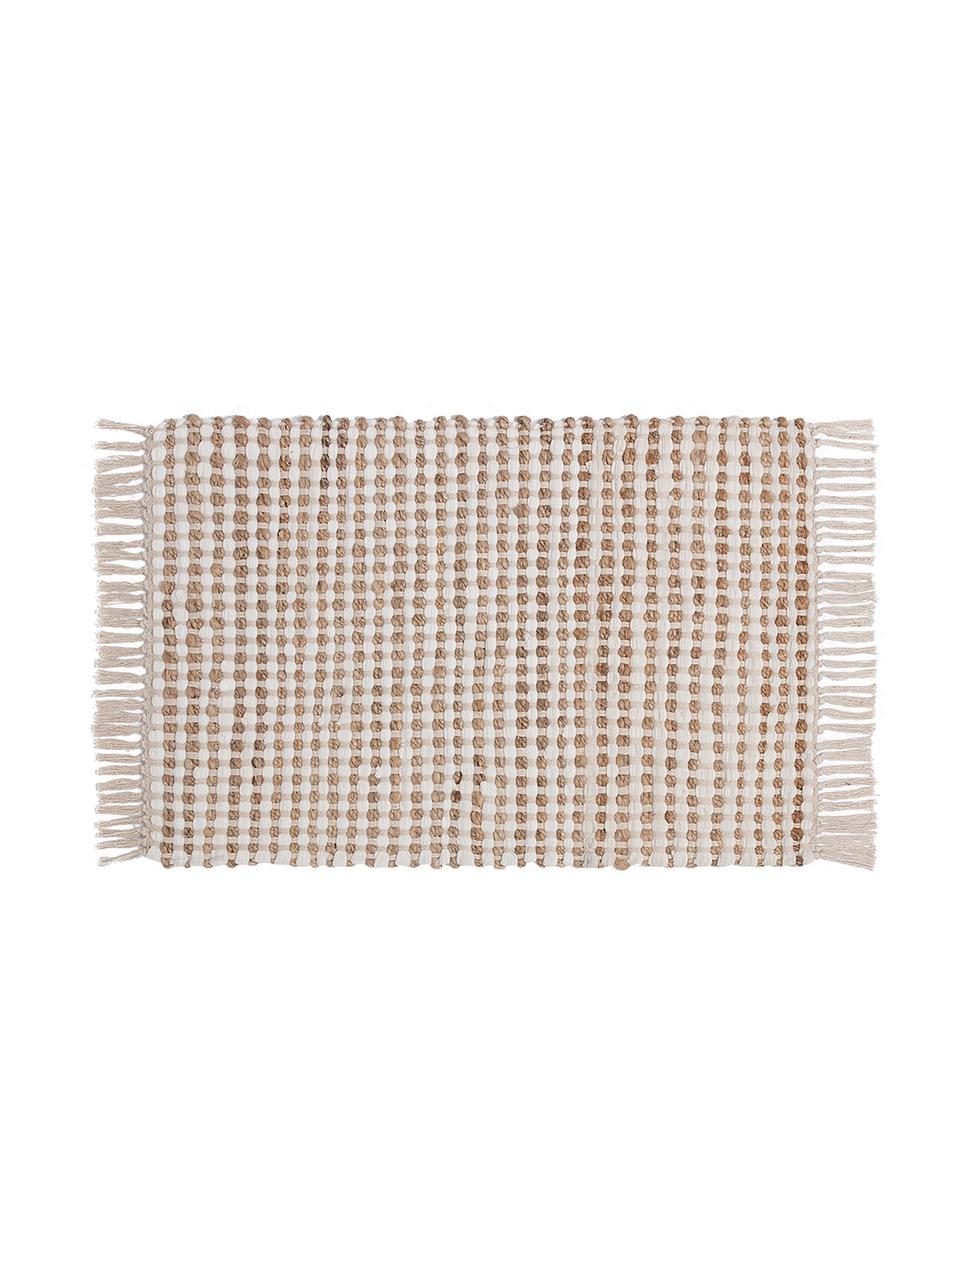 Fußmatte Fiesta aus Baumwolle/Jute, 55% Baumwolle, 45% Jute, Weiß, 45 x 75 cm